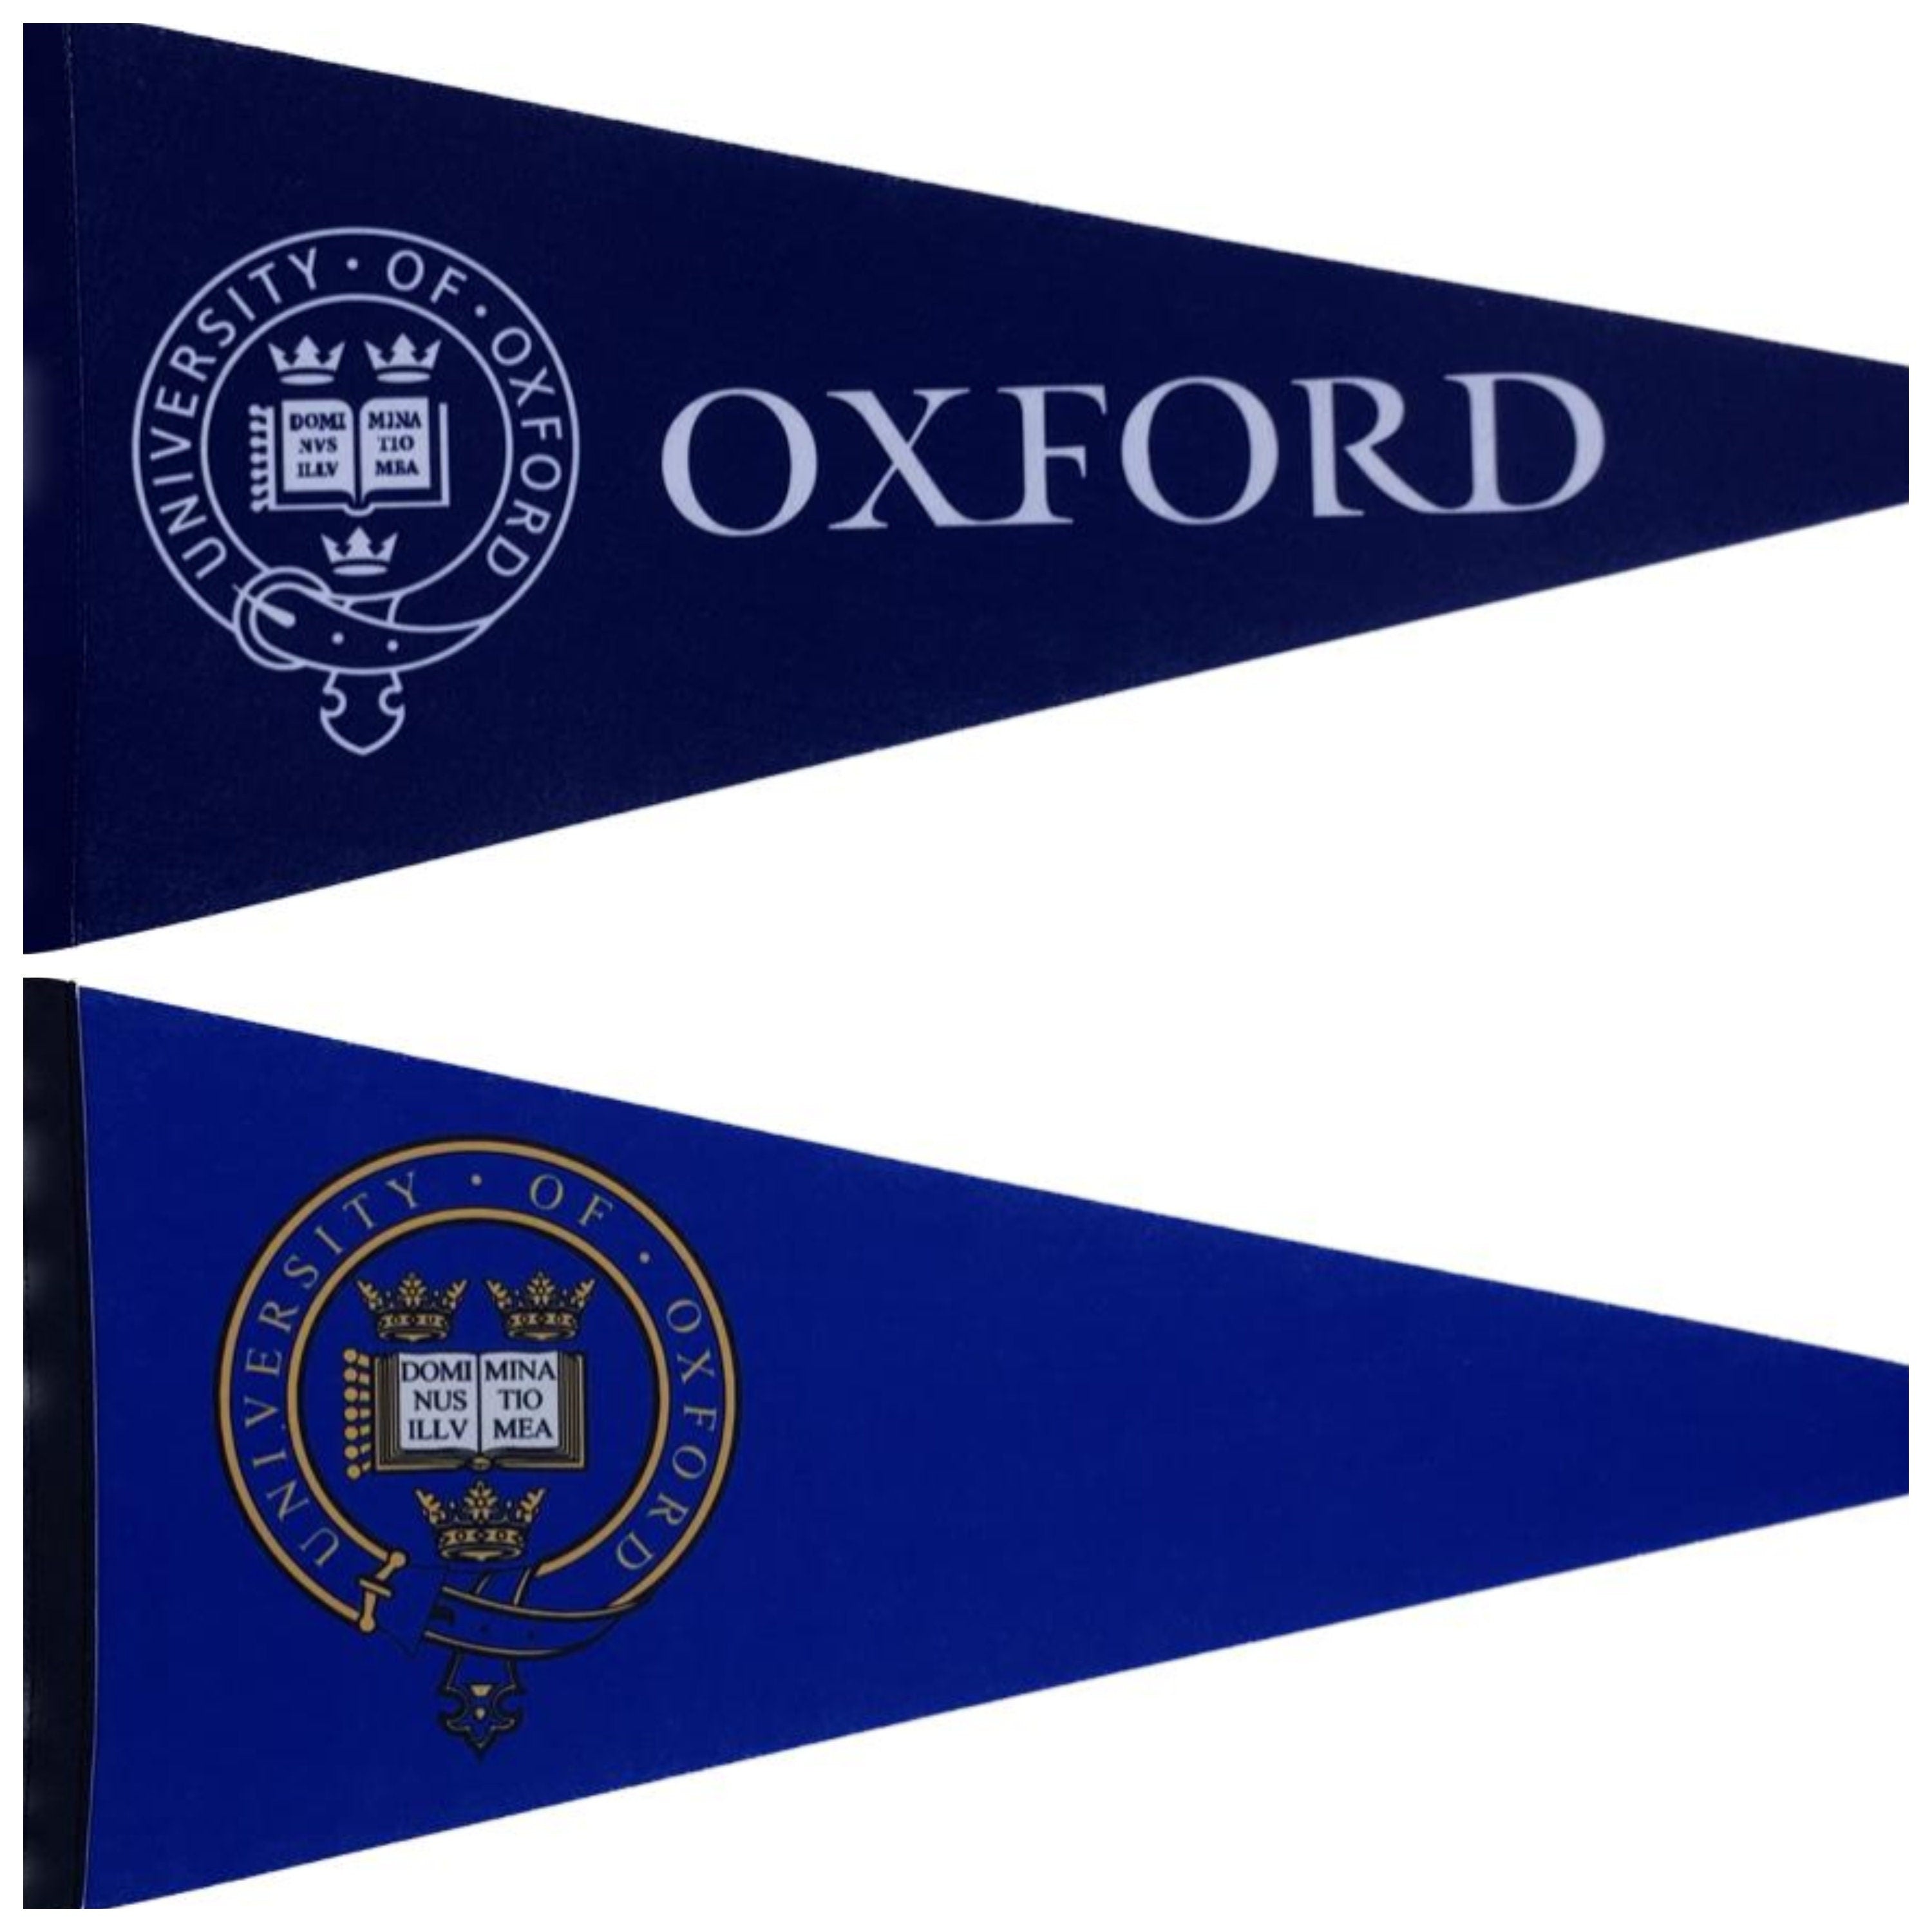 Universiteit van Oxford wimpels vaantje vlaggetje vlag fanion wimpel vlag fahne drapeau Oxford University gift oxford uni vlag uk gift uk ox - Blue